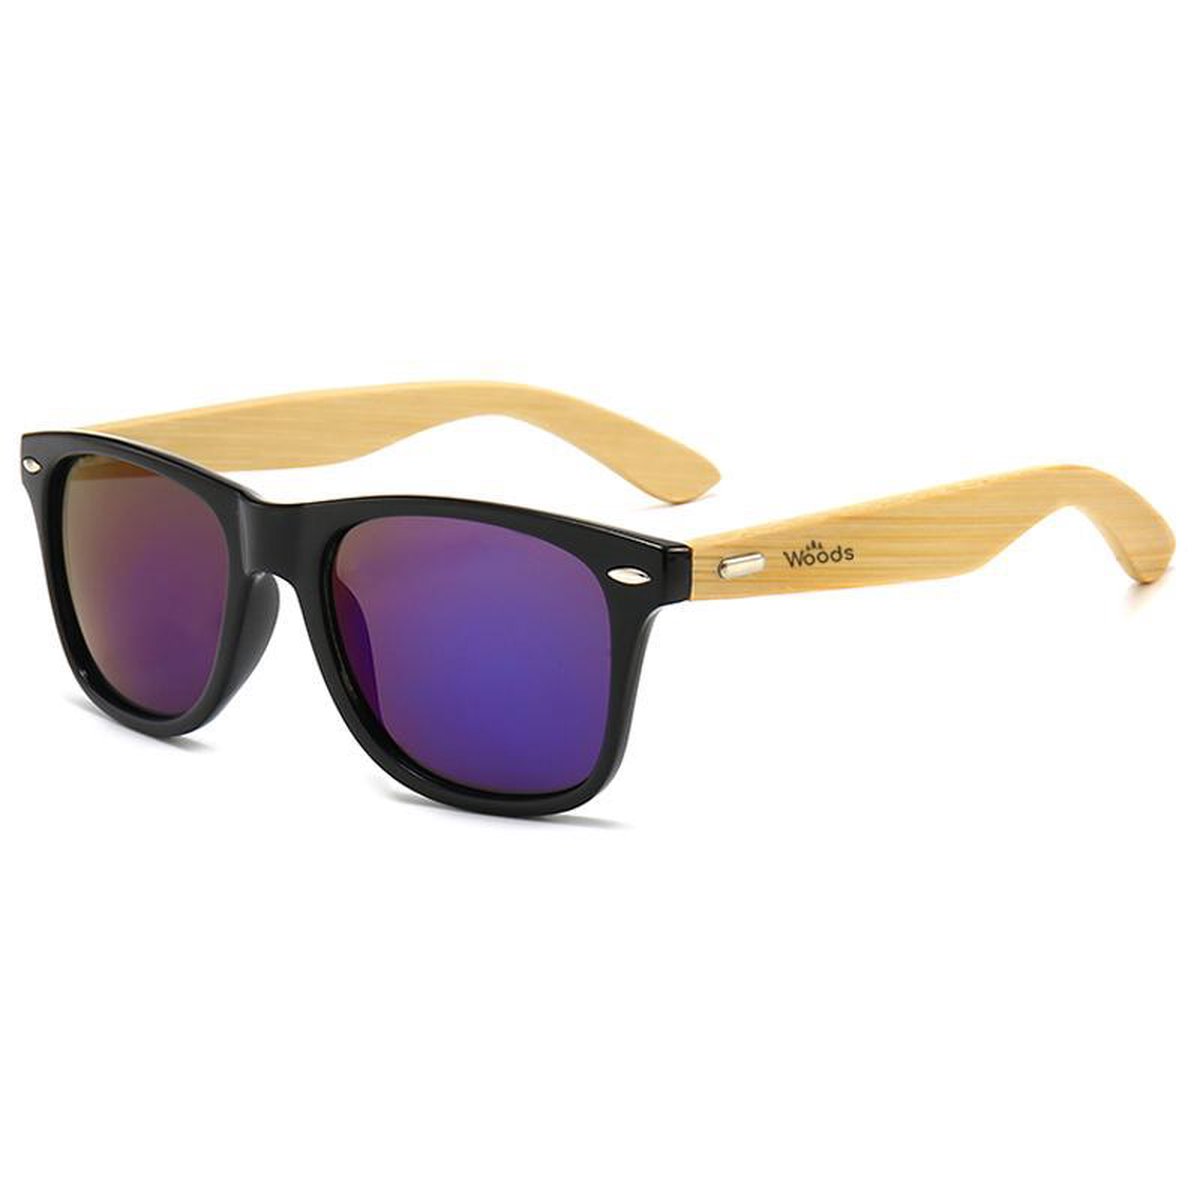 Woods Sunglasses - Zonnebril Met Houten pootjes - Blauw - Spiegelend - Unisex - Met accessoires